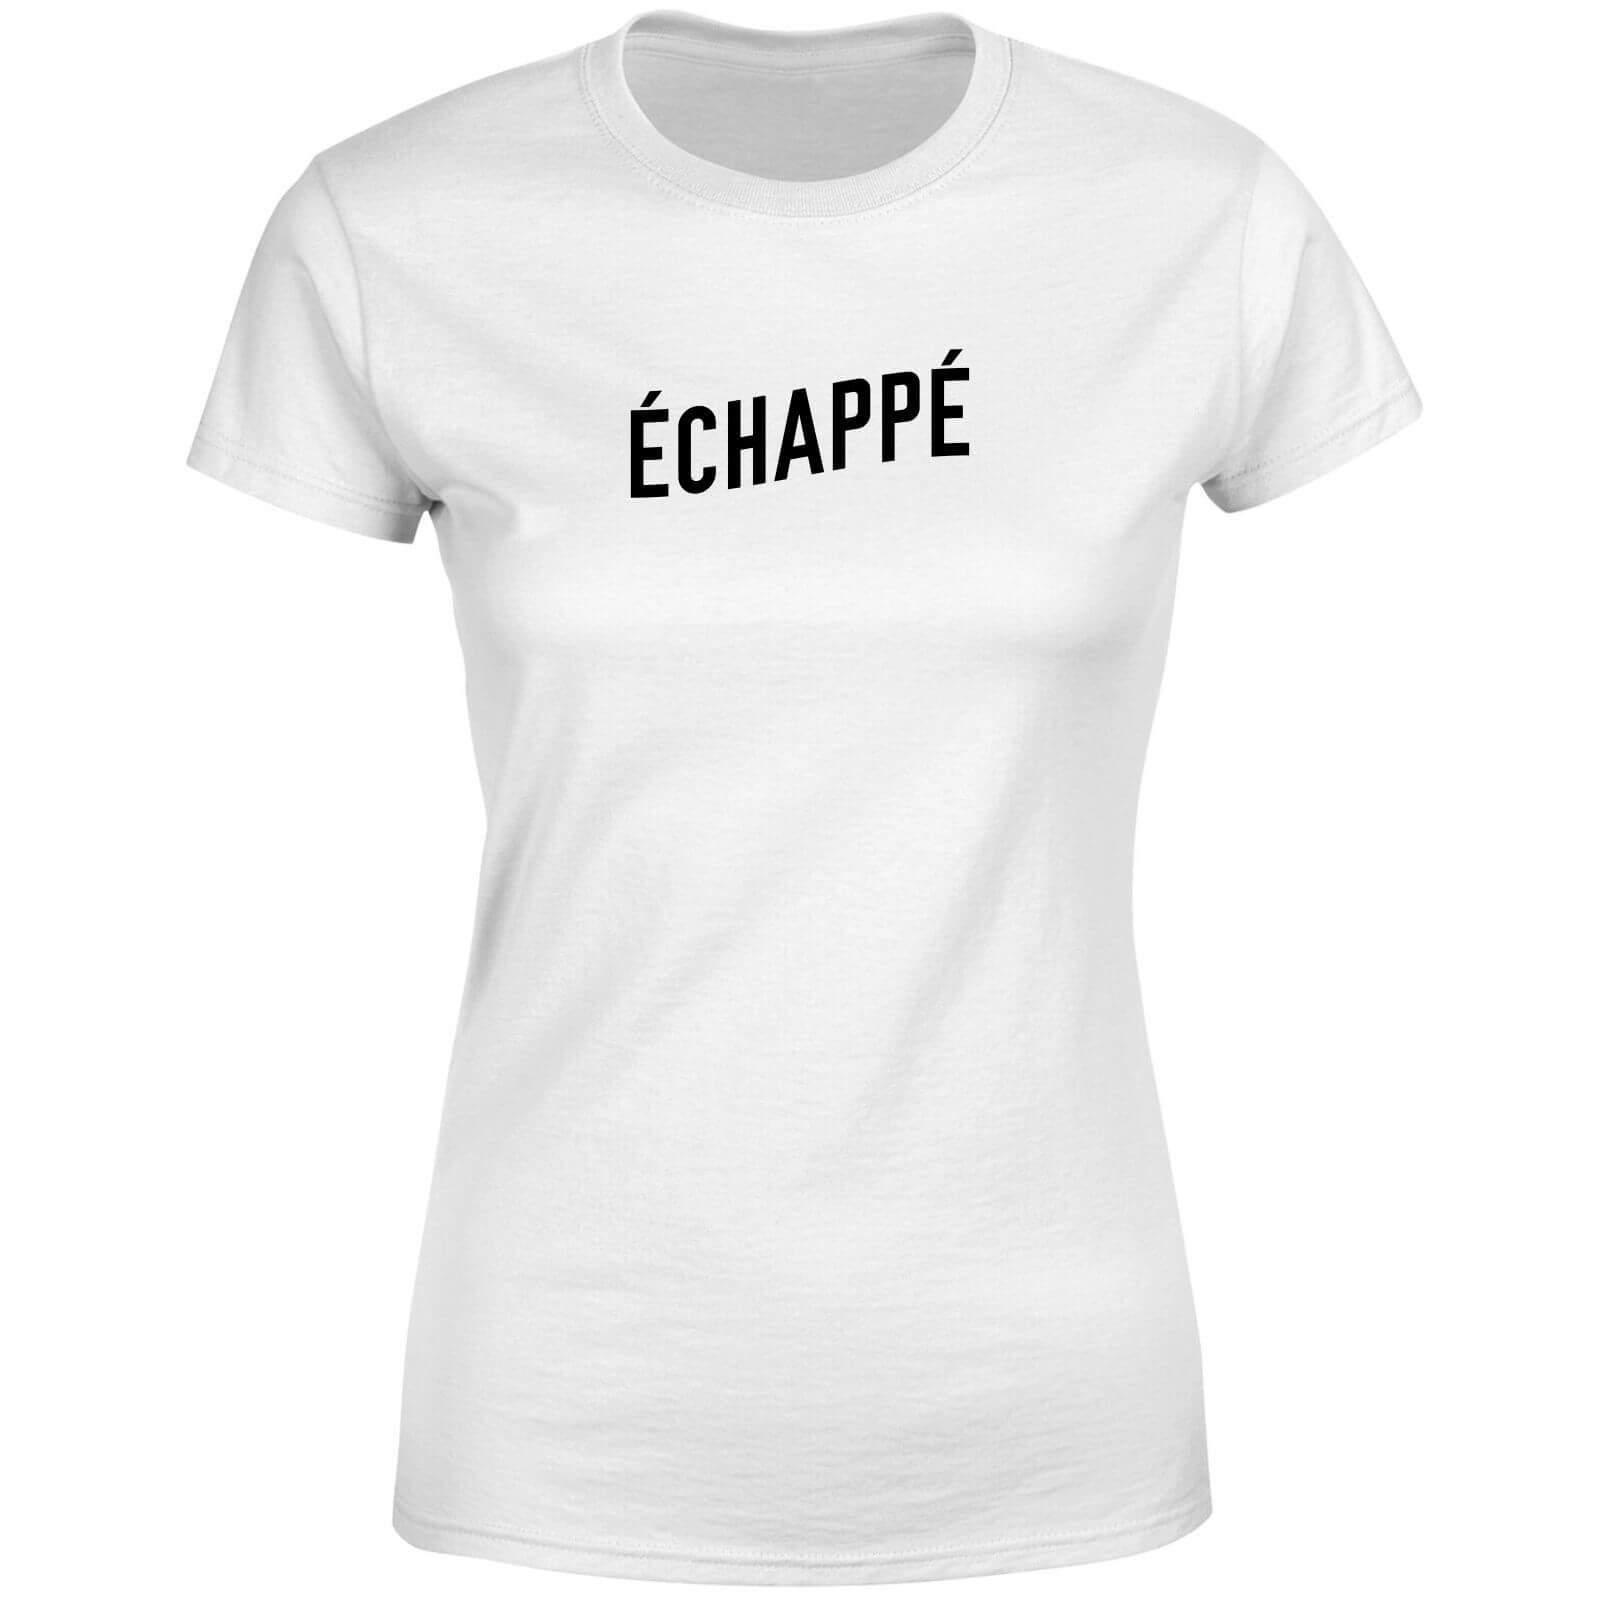 Echappe Women's T-Shirt - White - XXL - White